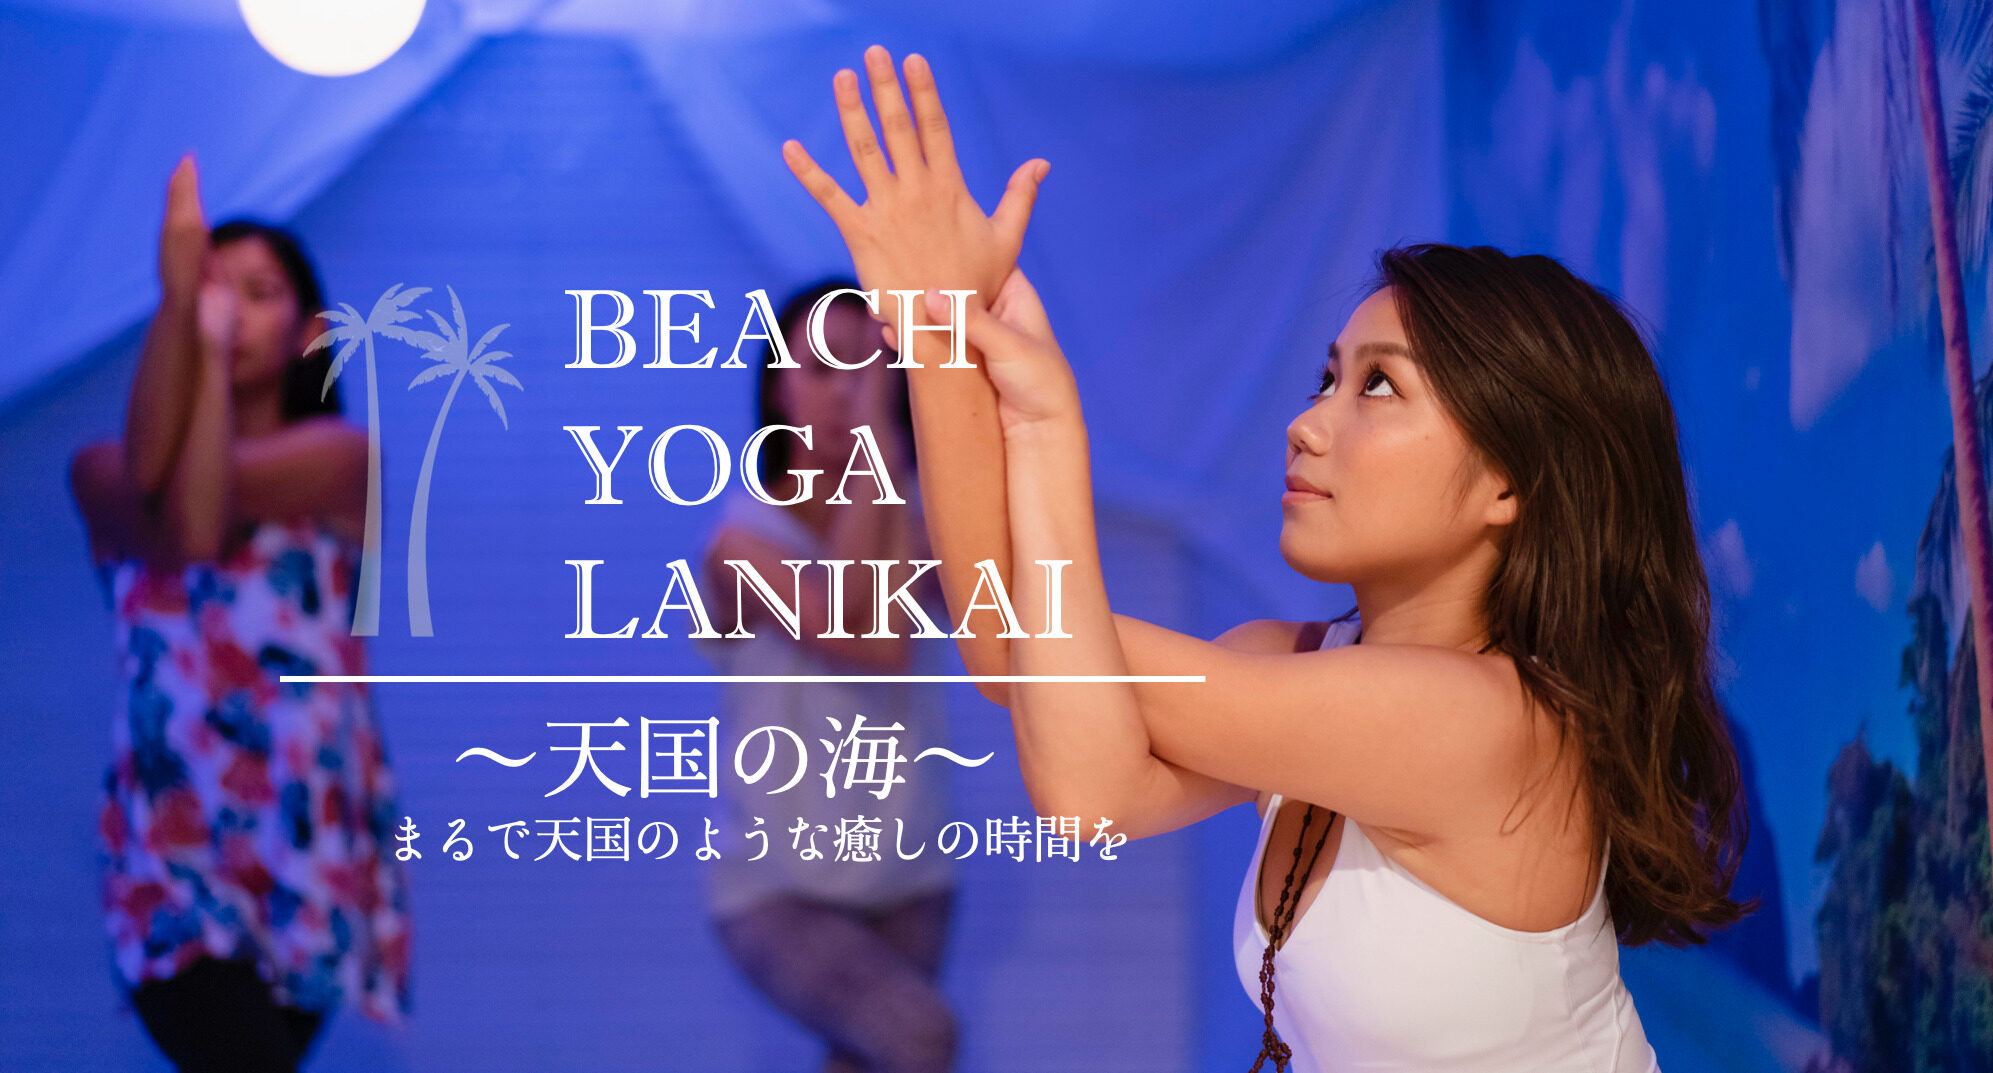 Beach Yoga Lanikai 千葉店